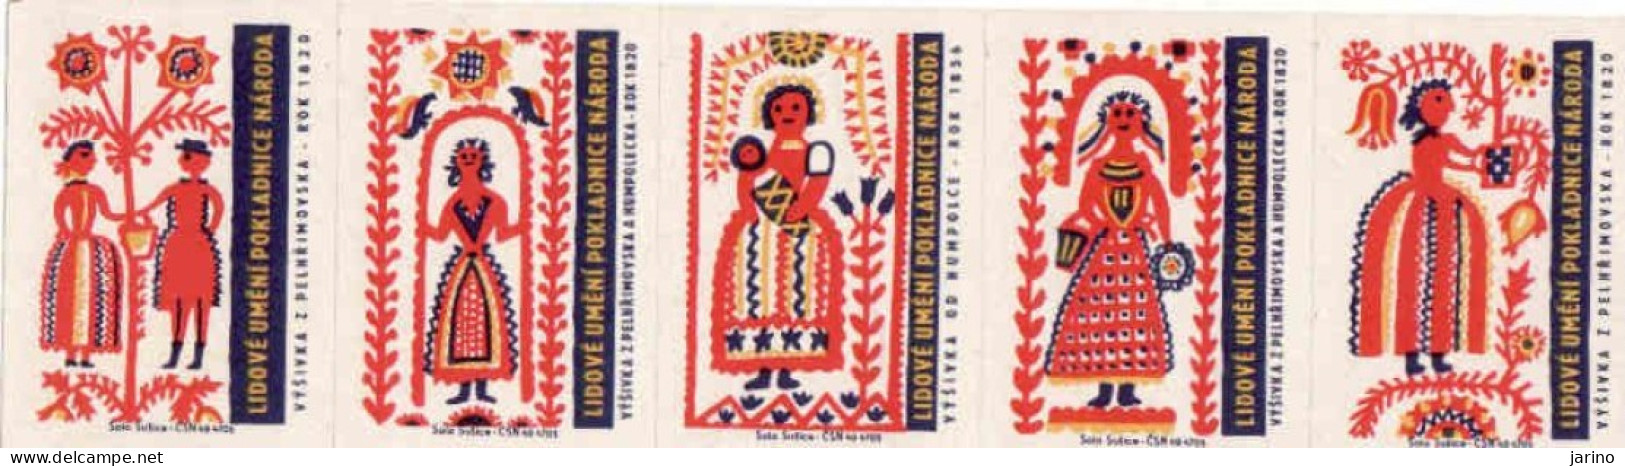 Czech Republic, 5 X Matchbox Labels, Folk Art - Embroideries From Pelhrimov, Humpolec, Year 1820 - Matchbox Labels